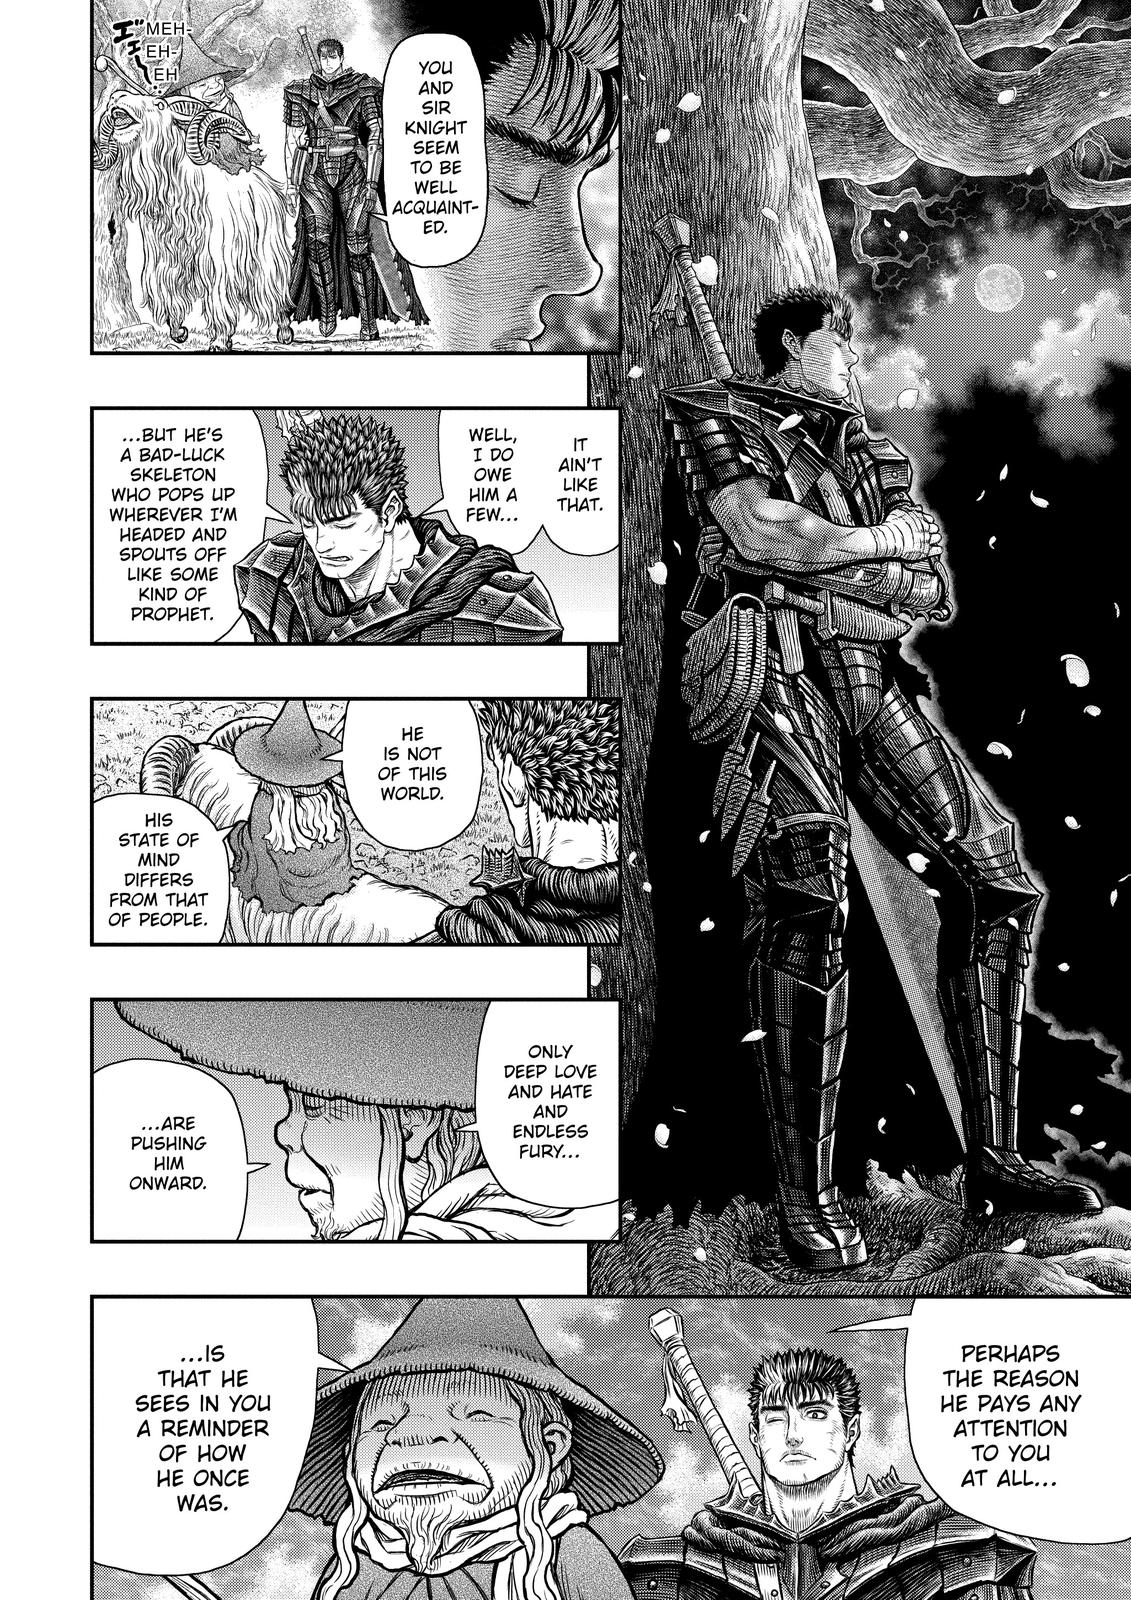 Berserk Manga Chapter 363 image 14